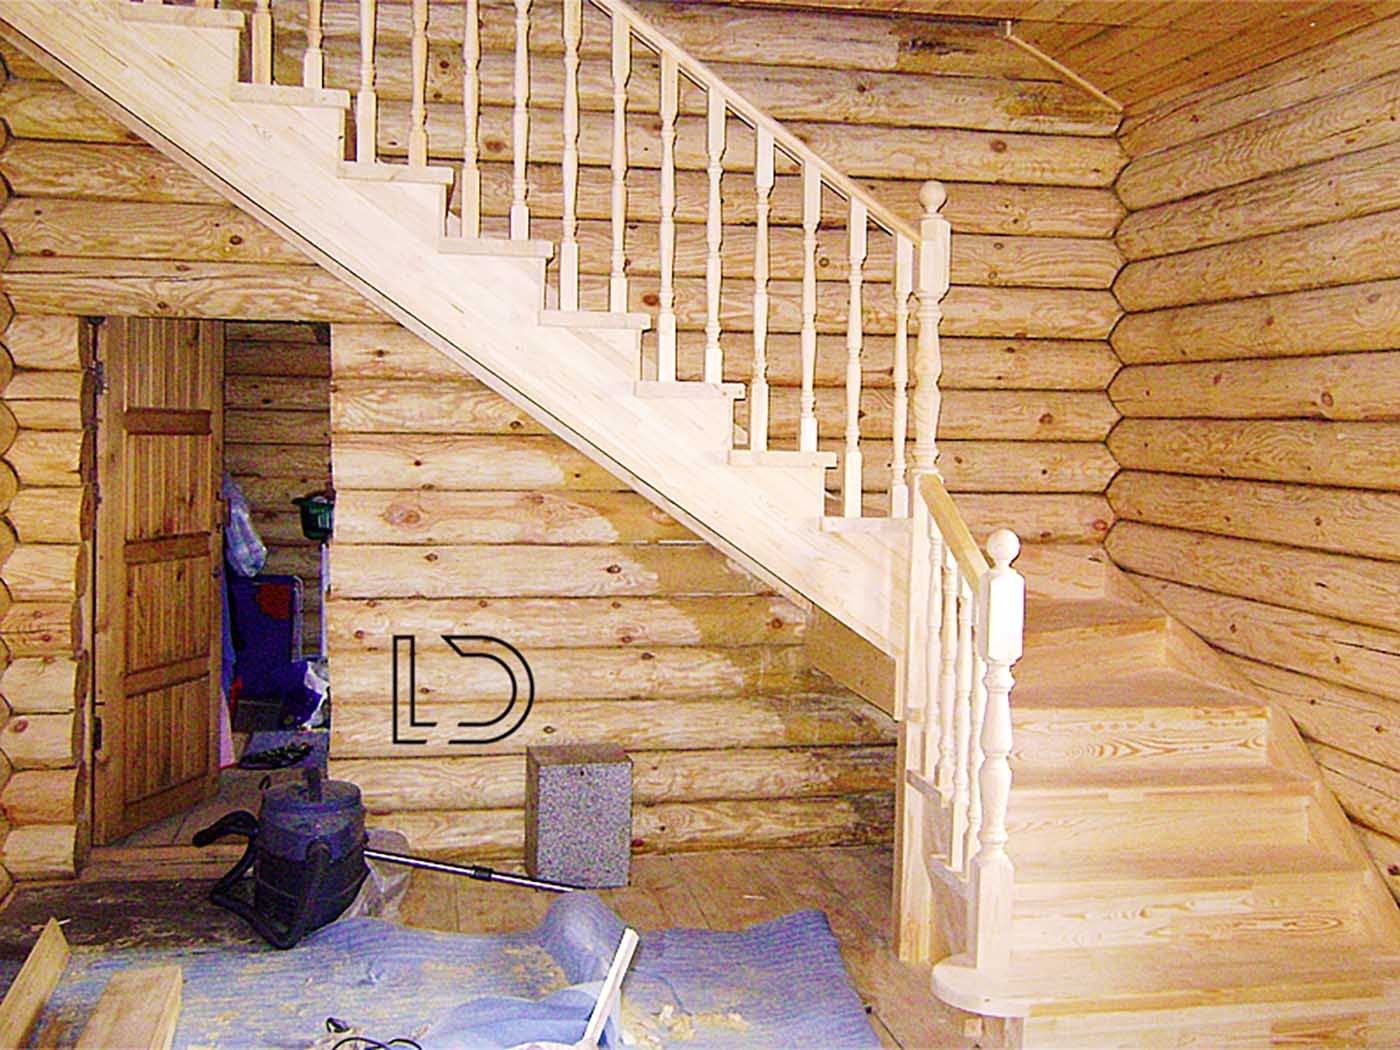 Второй этаж видео. Лестница деревянная. Лестница в деревяномдоме. Деревянная лестница в деревянном доме. Деревянная лестница в срубе.